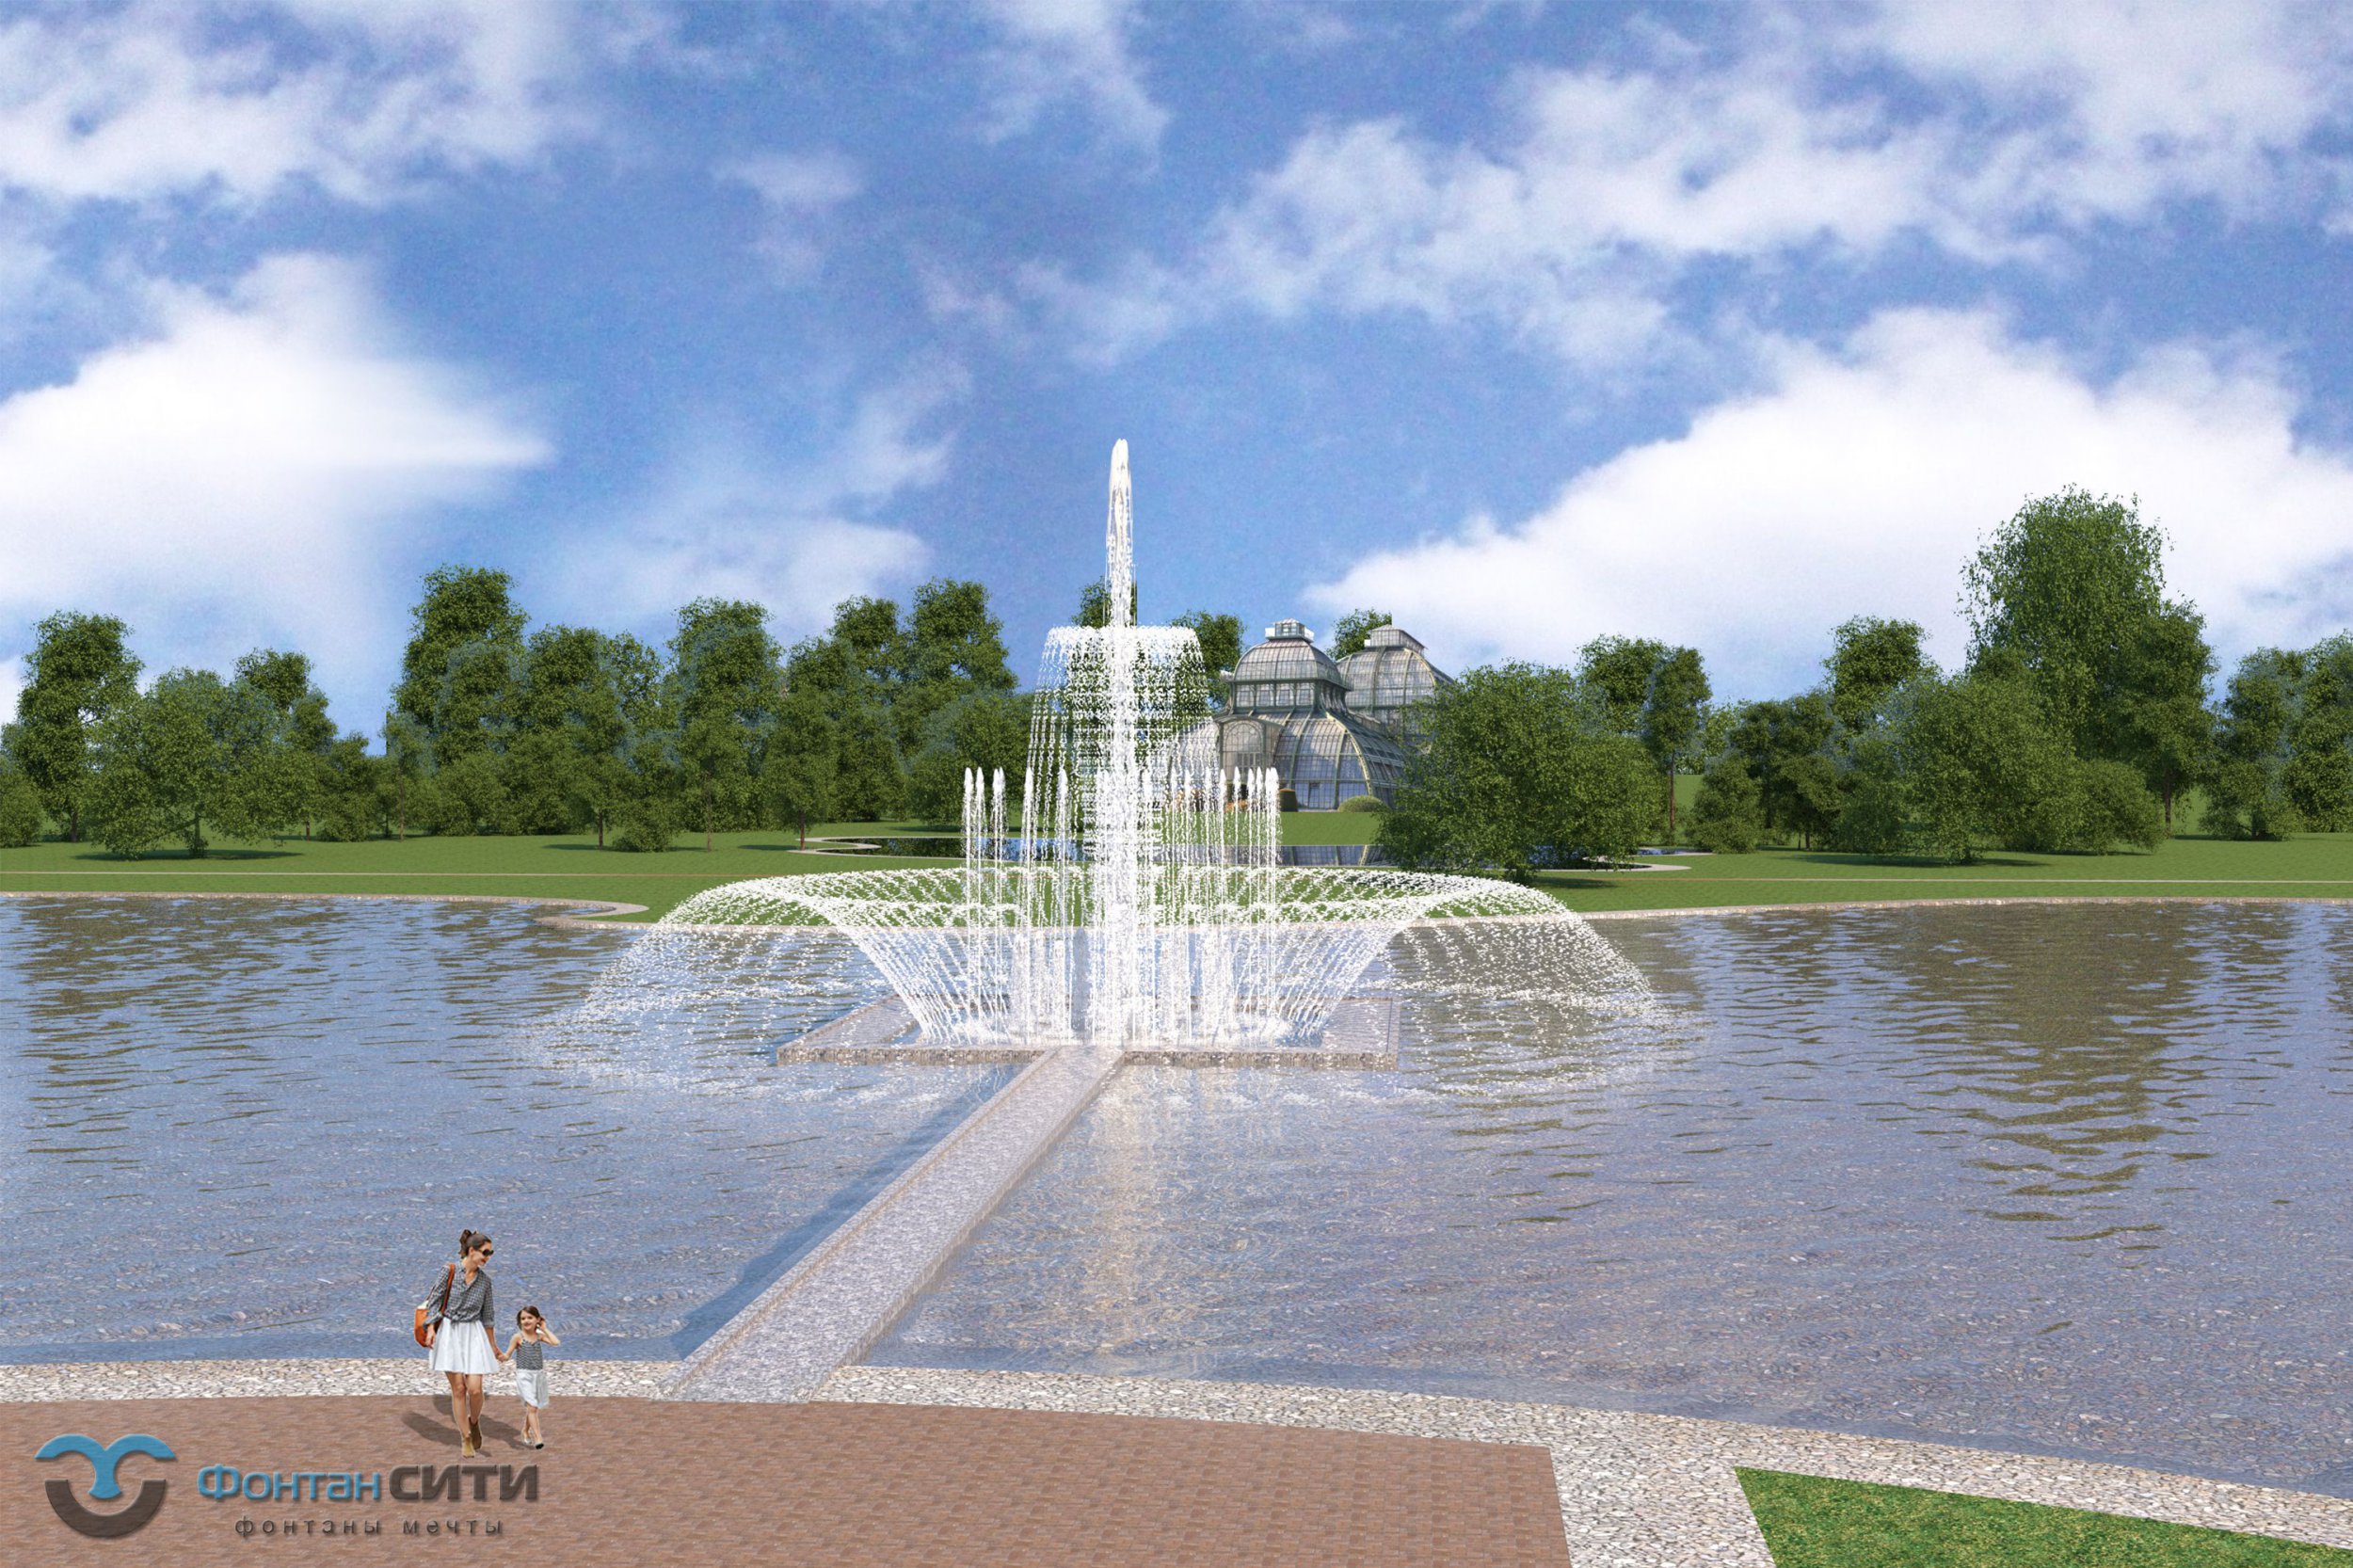 Проект Плавающий фонтан на территории частной резиденции Московская область Фонтан СИТИ Тел: 8-800-234-5405